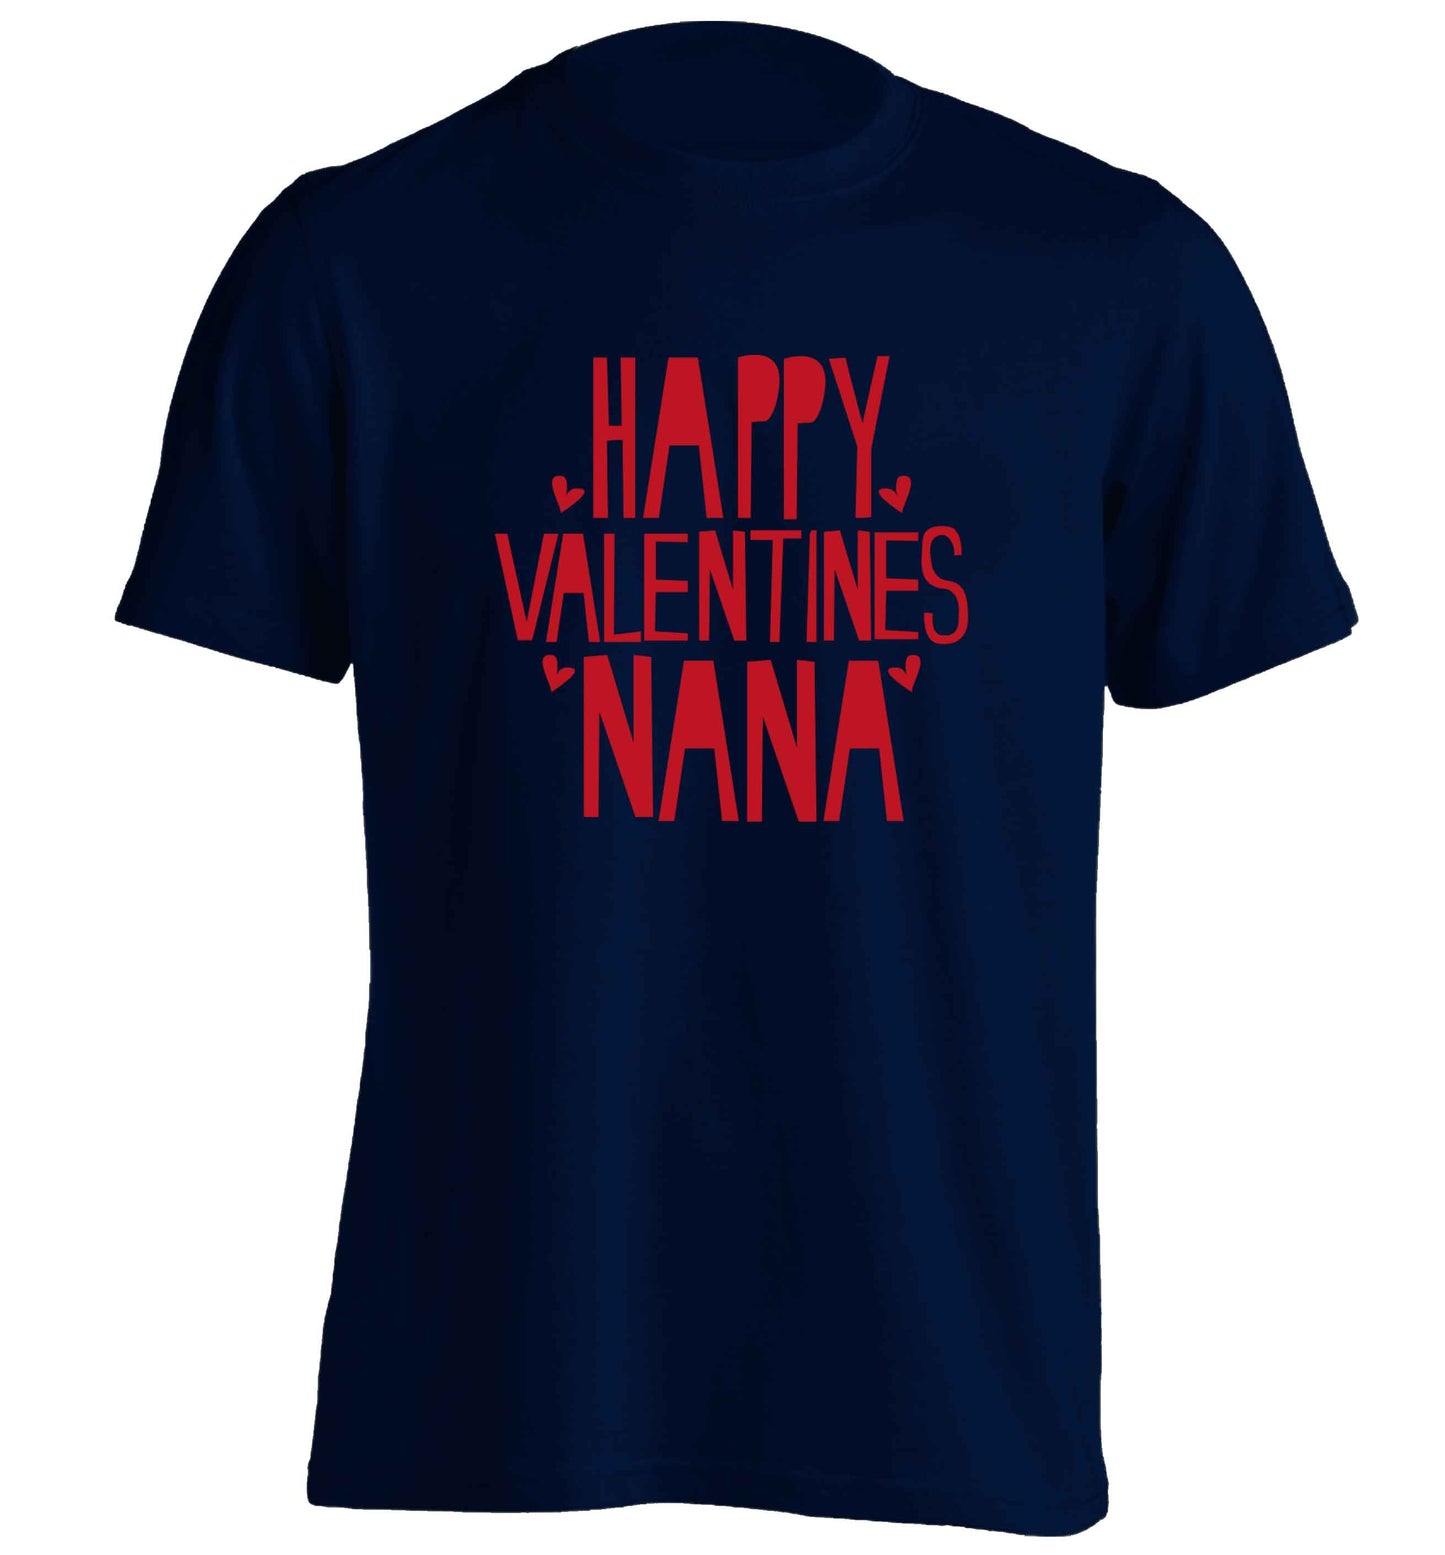 Happy valentines nana adults unisex navy Tshirt 2XL